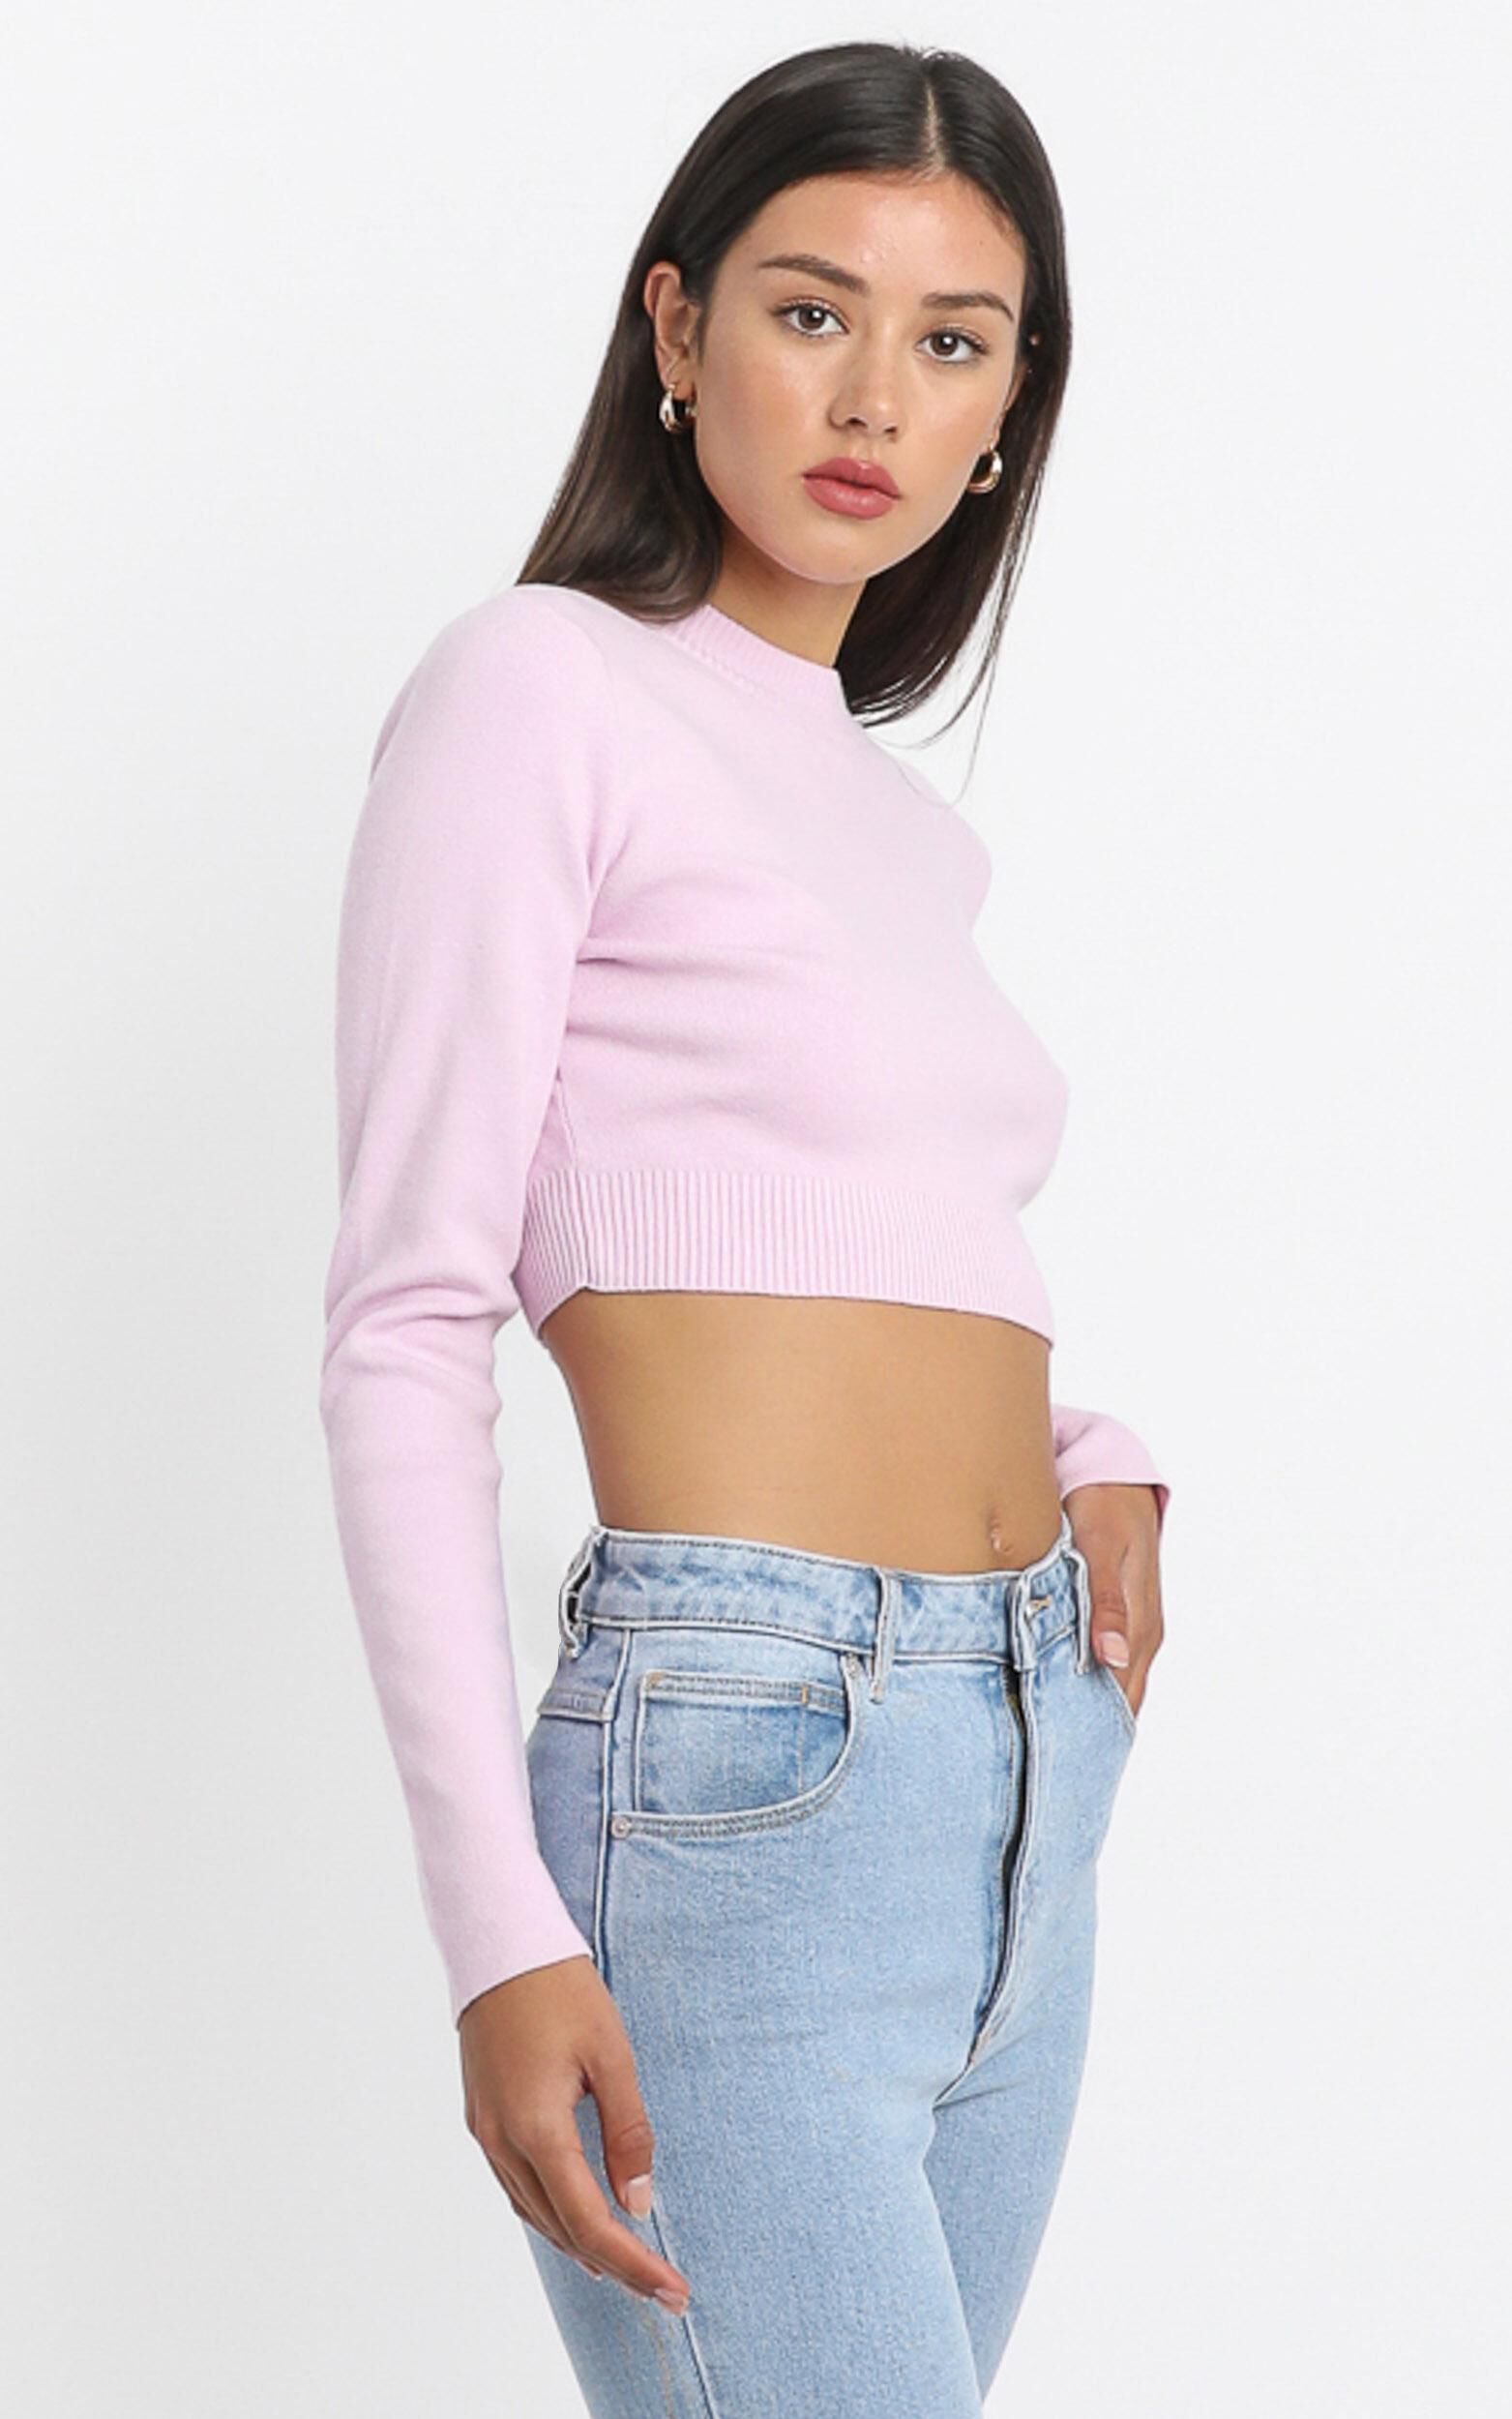 Model Off Duty Knit Top in Pink | Showpo